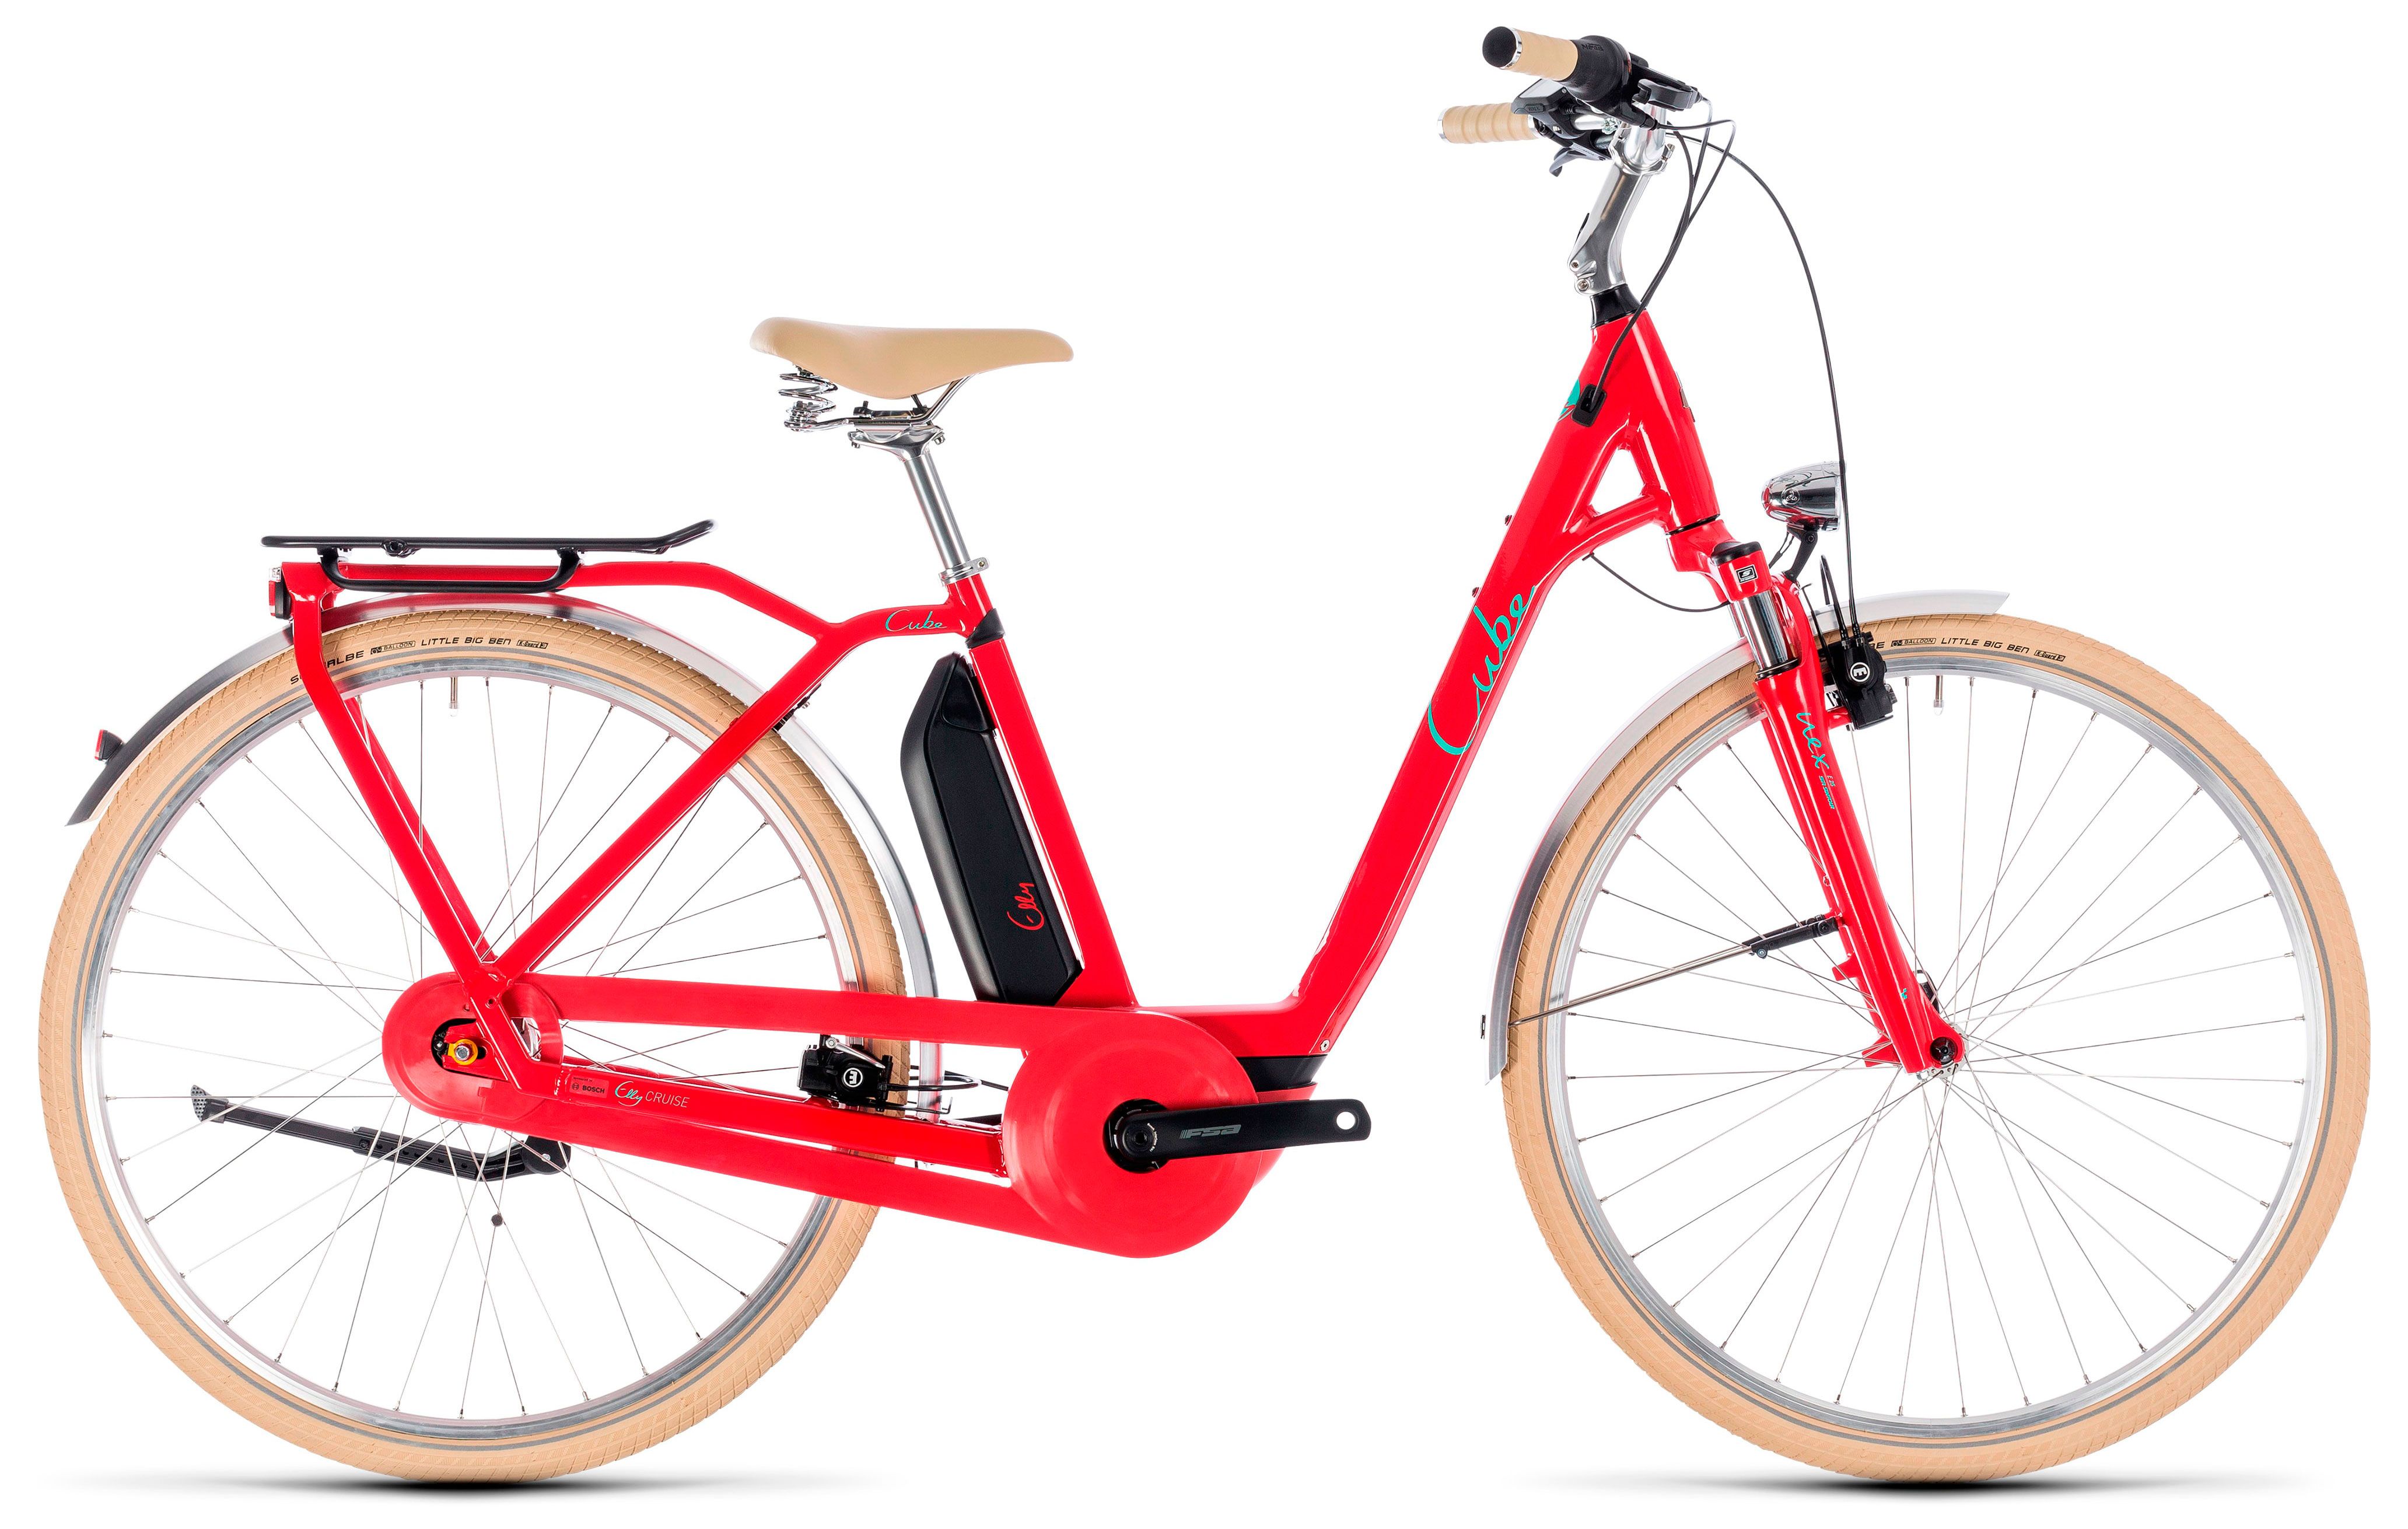  Велосипед трехколесный детский велосипед Cube Elly Cruise Hybrid 500 2018